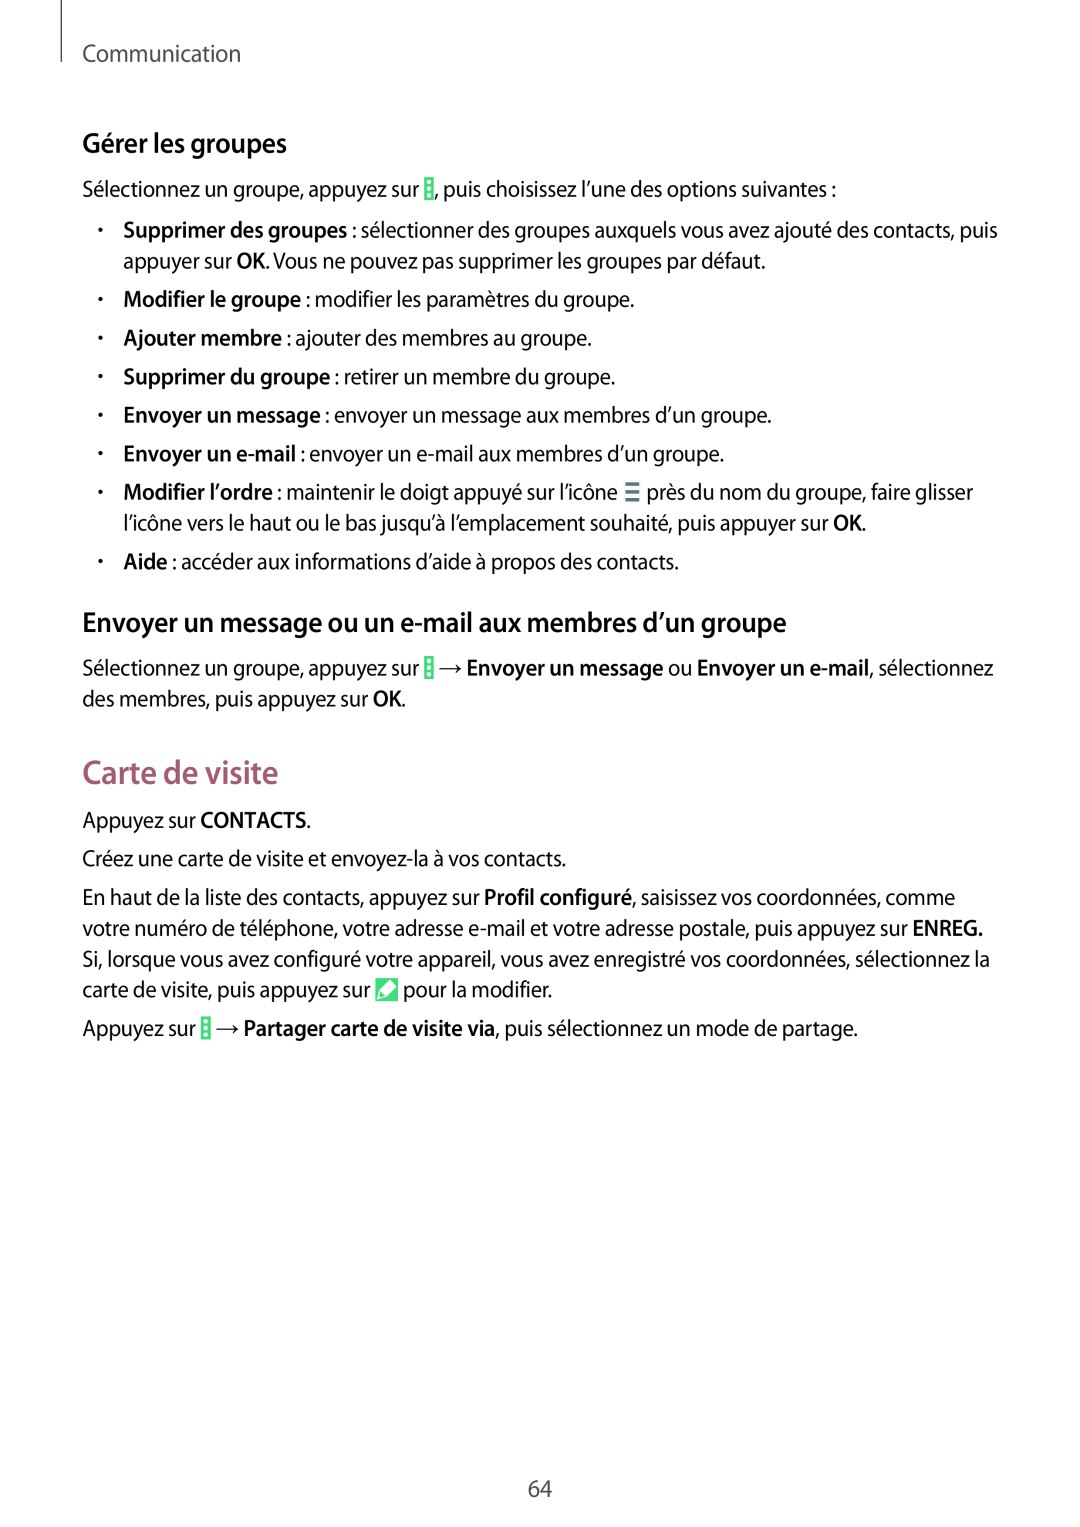 Samsung SM-P9050ZWAXEF manual Carte de visite, Gérer les groupes, Envoyer un message ou un e-mail aux membres d’un groupe 